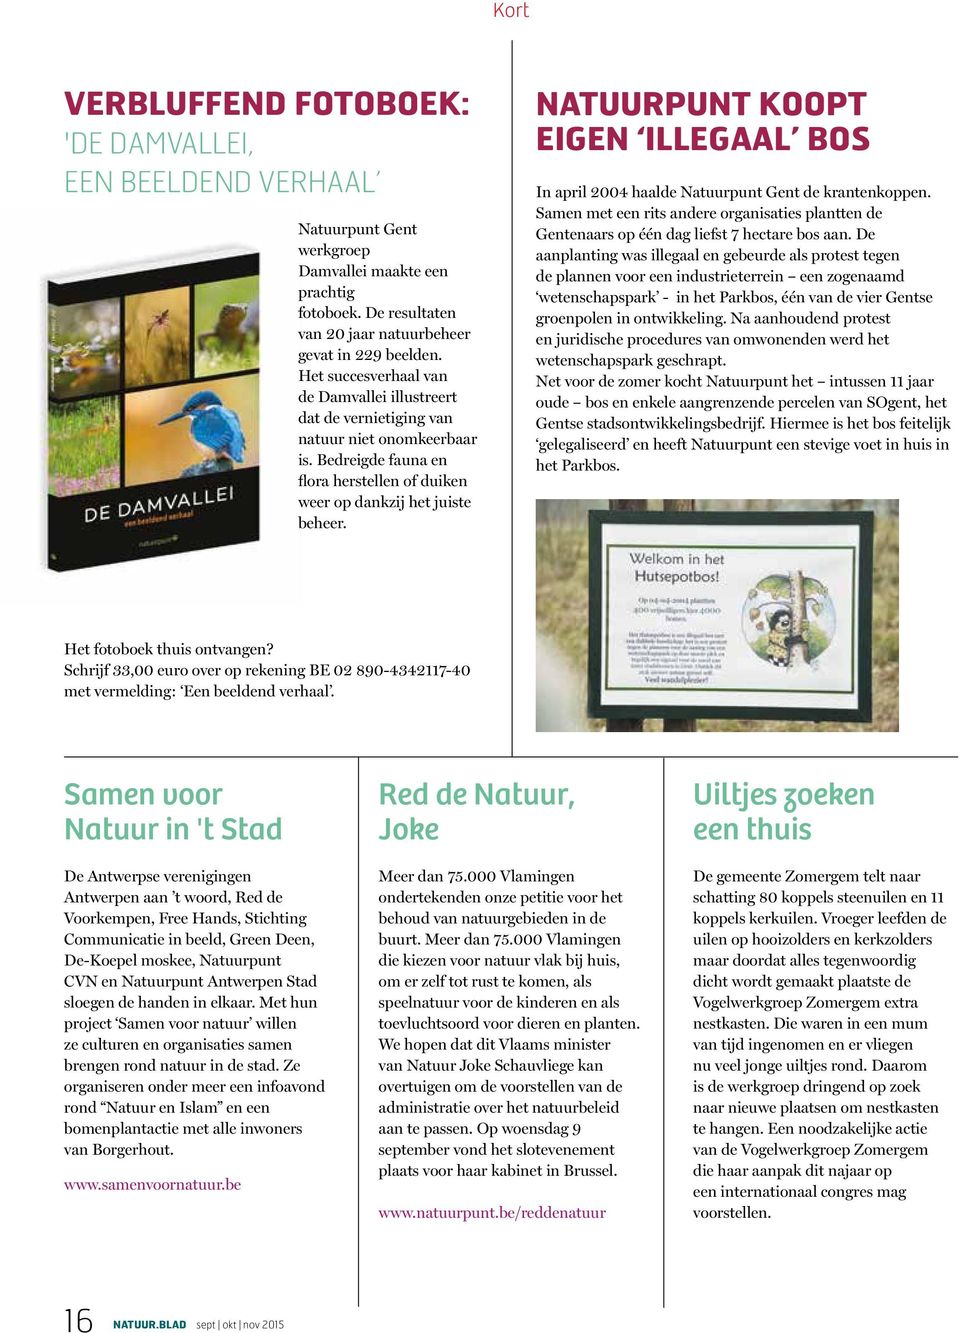 NATUURPUNT KOOPT EIGEN ILLEGAAL BOS In april 2004 haalde Natuurpunt Gent de krantenkoppen. Samen met een rits andere organisaties plantten de Gentenaars op één dag liefst 7 hectare bos aan.